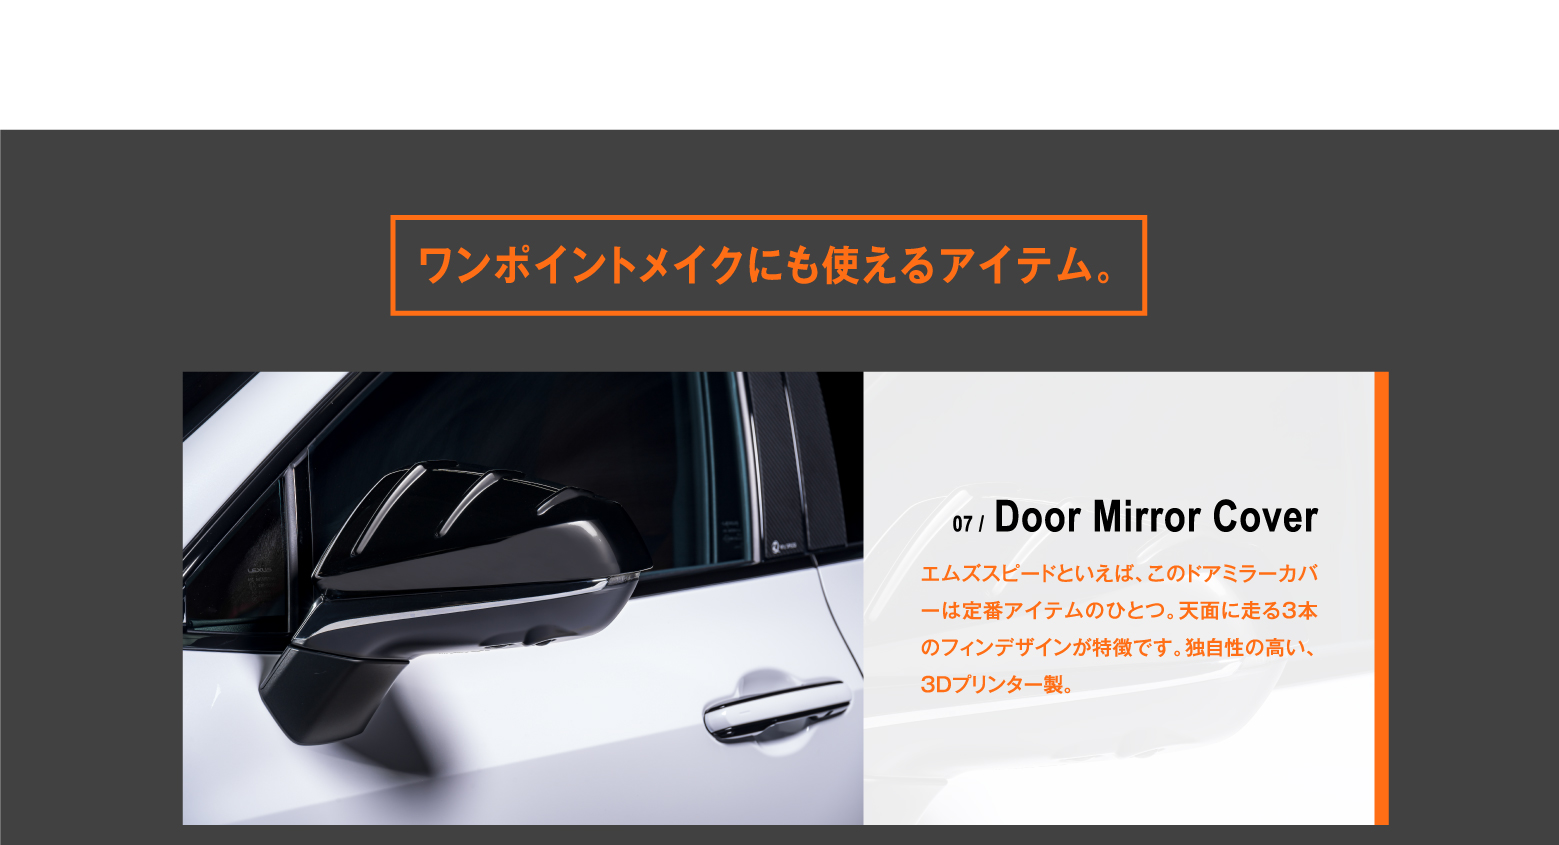 ワンポイントメイクにも使えるアイテム。07 / Door Mirror Cover エムズスピードといえば、このドアミラーカバーは定番アイテムのひとつ。天面に走る3本のフィンデザインが特徴です。独自性の高い、3Dプリンター製。